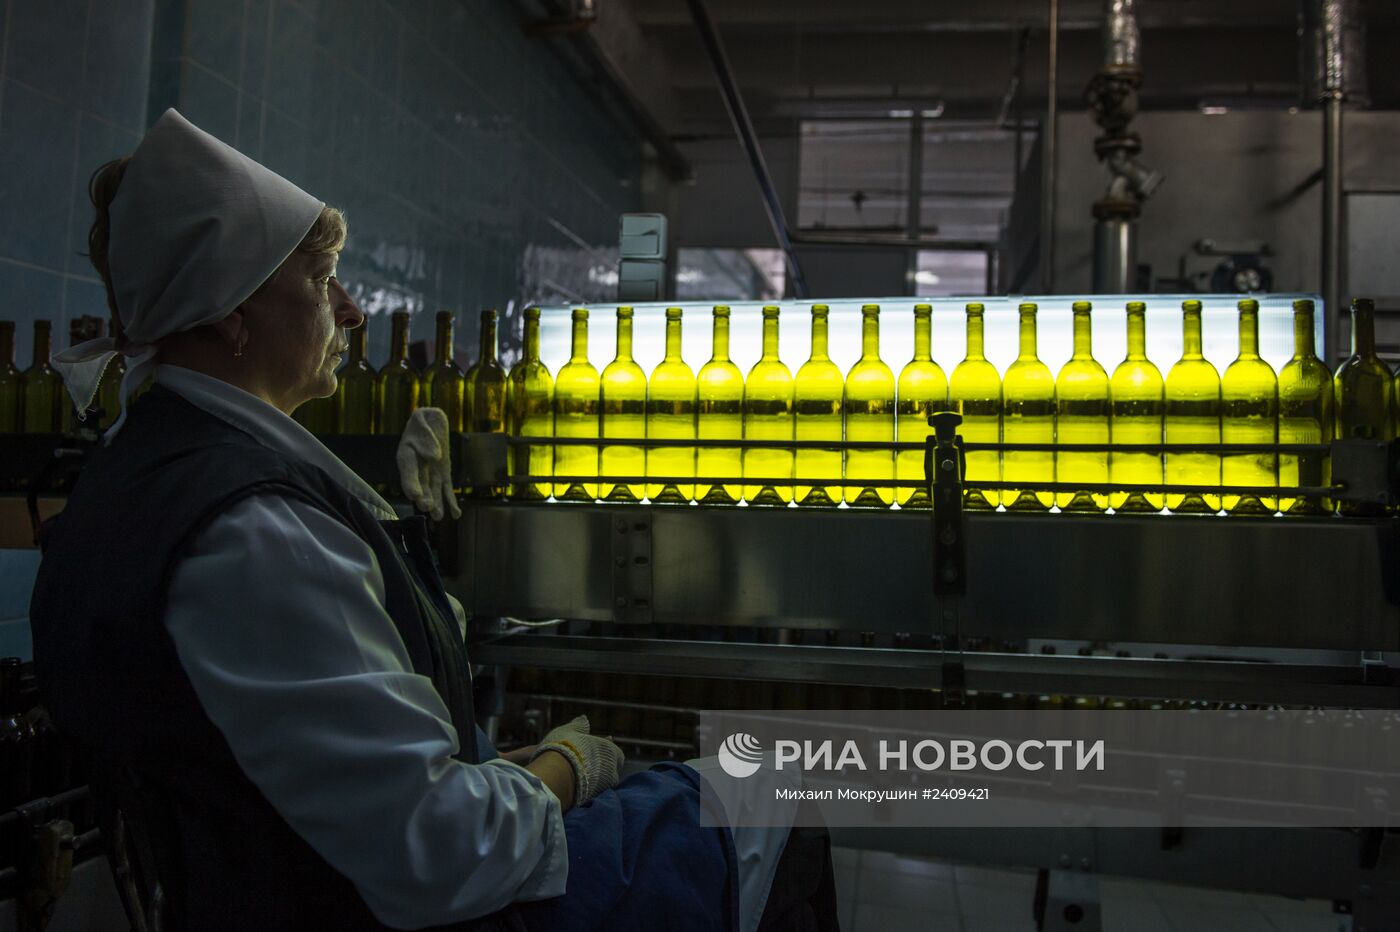 Винодельческий завод "Массандра" в Крыму